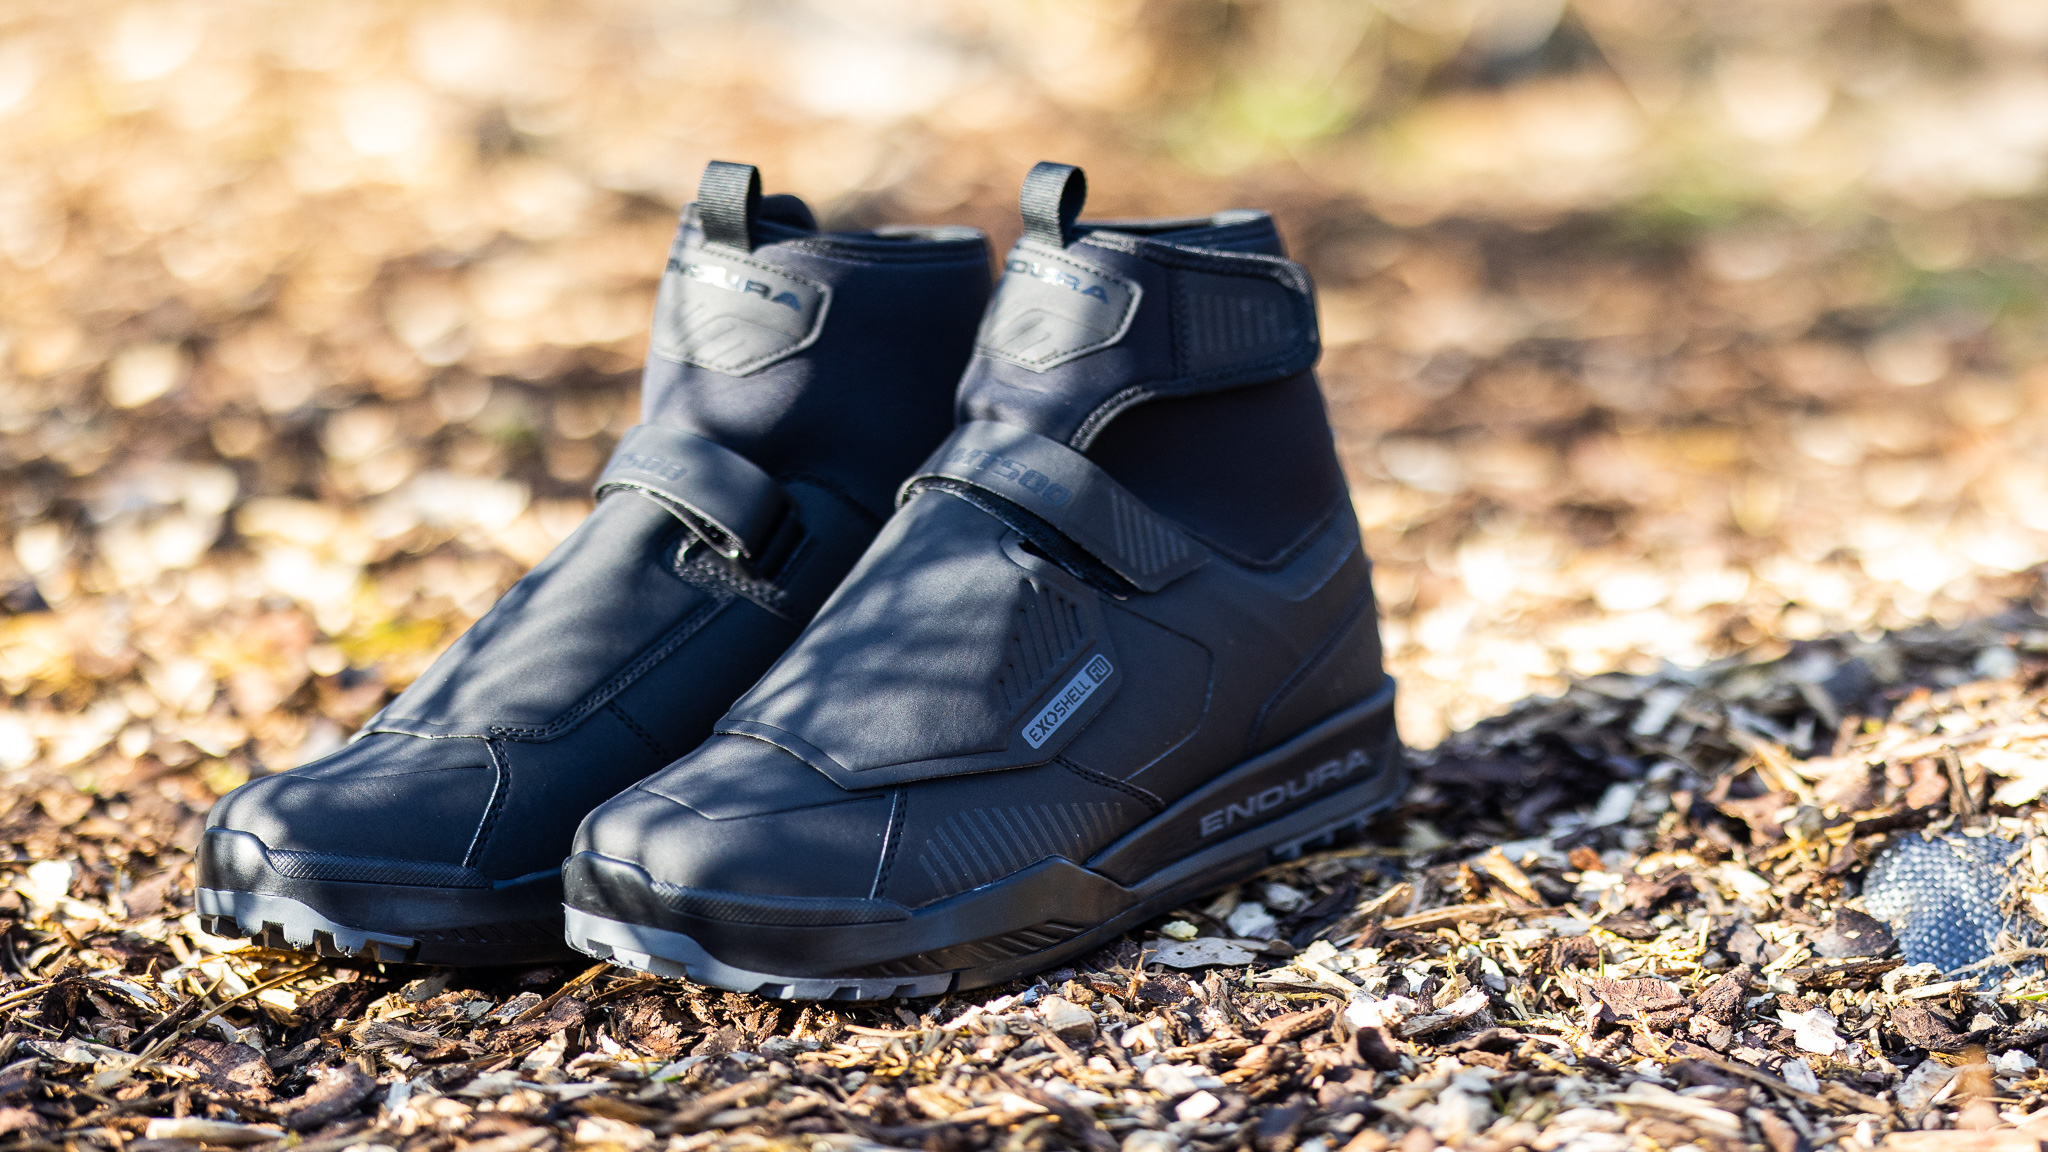 Chaussures Endura MT500 Burner imperméables pédales plates Noir